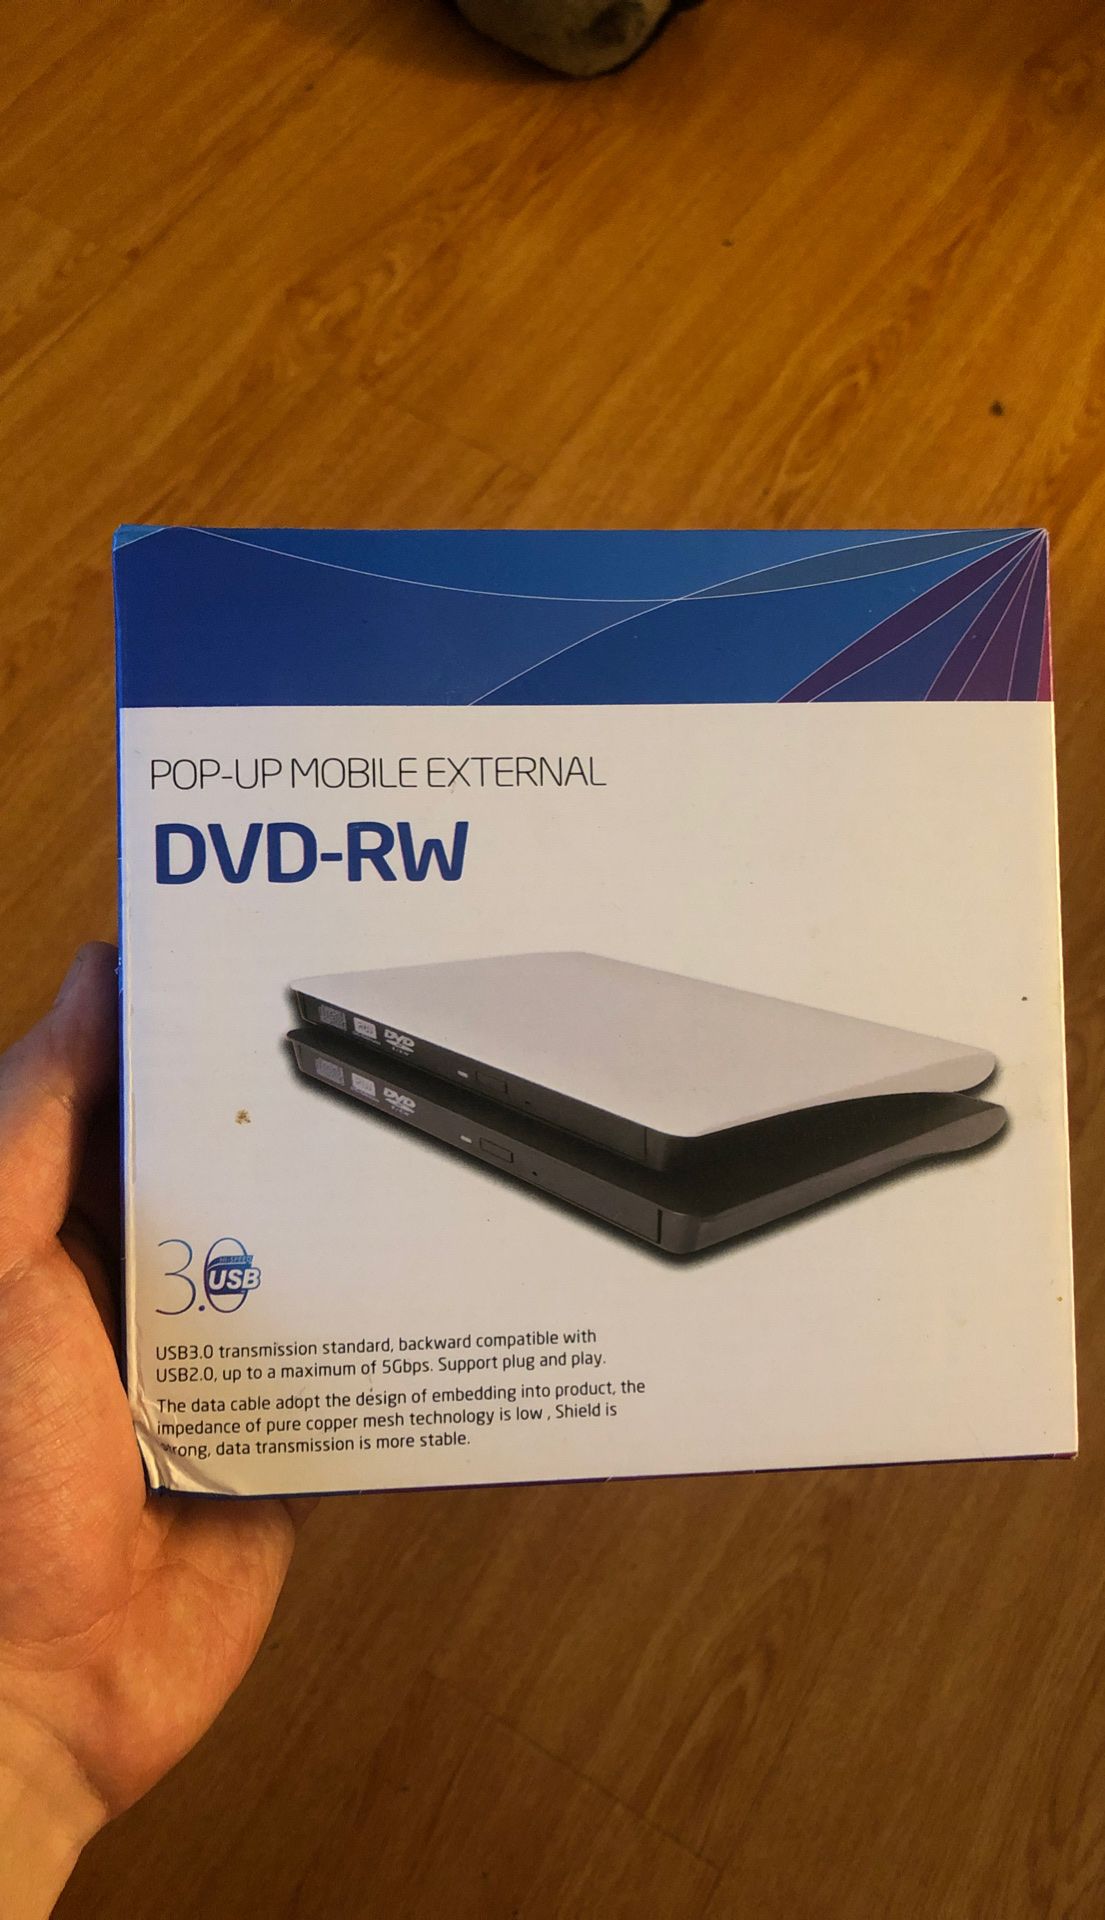 External DVD drive